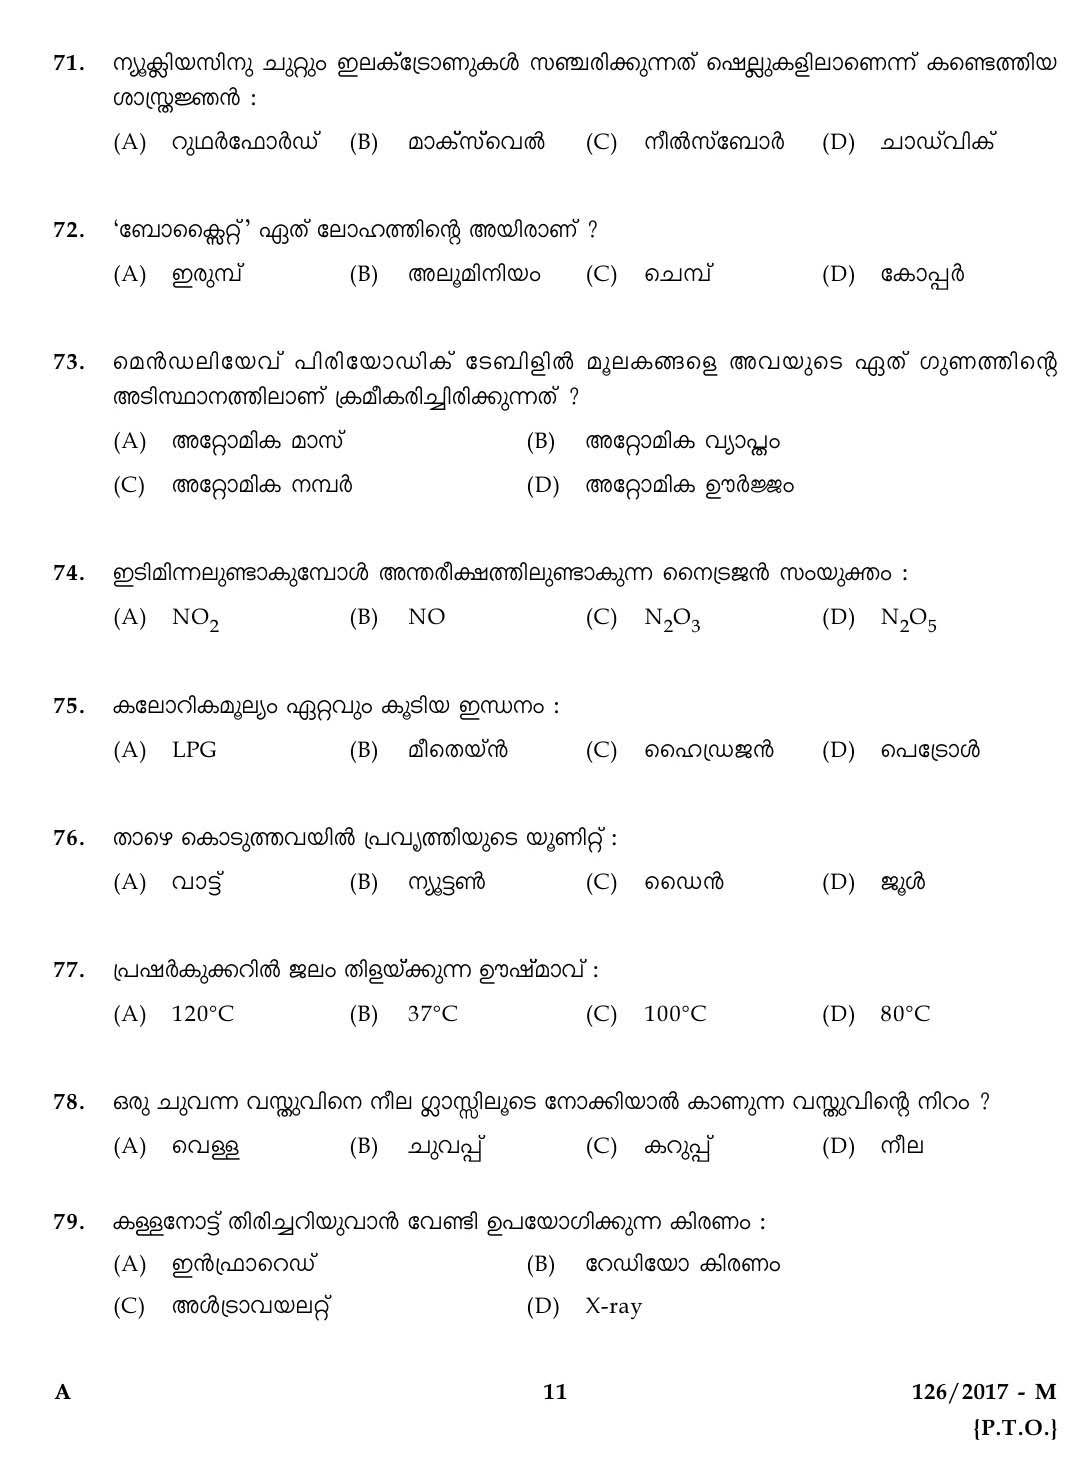 Kerala Last Grade Servants Exam 2017 Question Paper Code 1262017 M 10